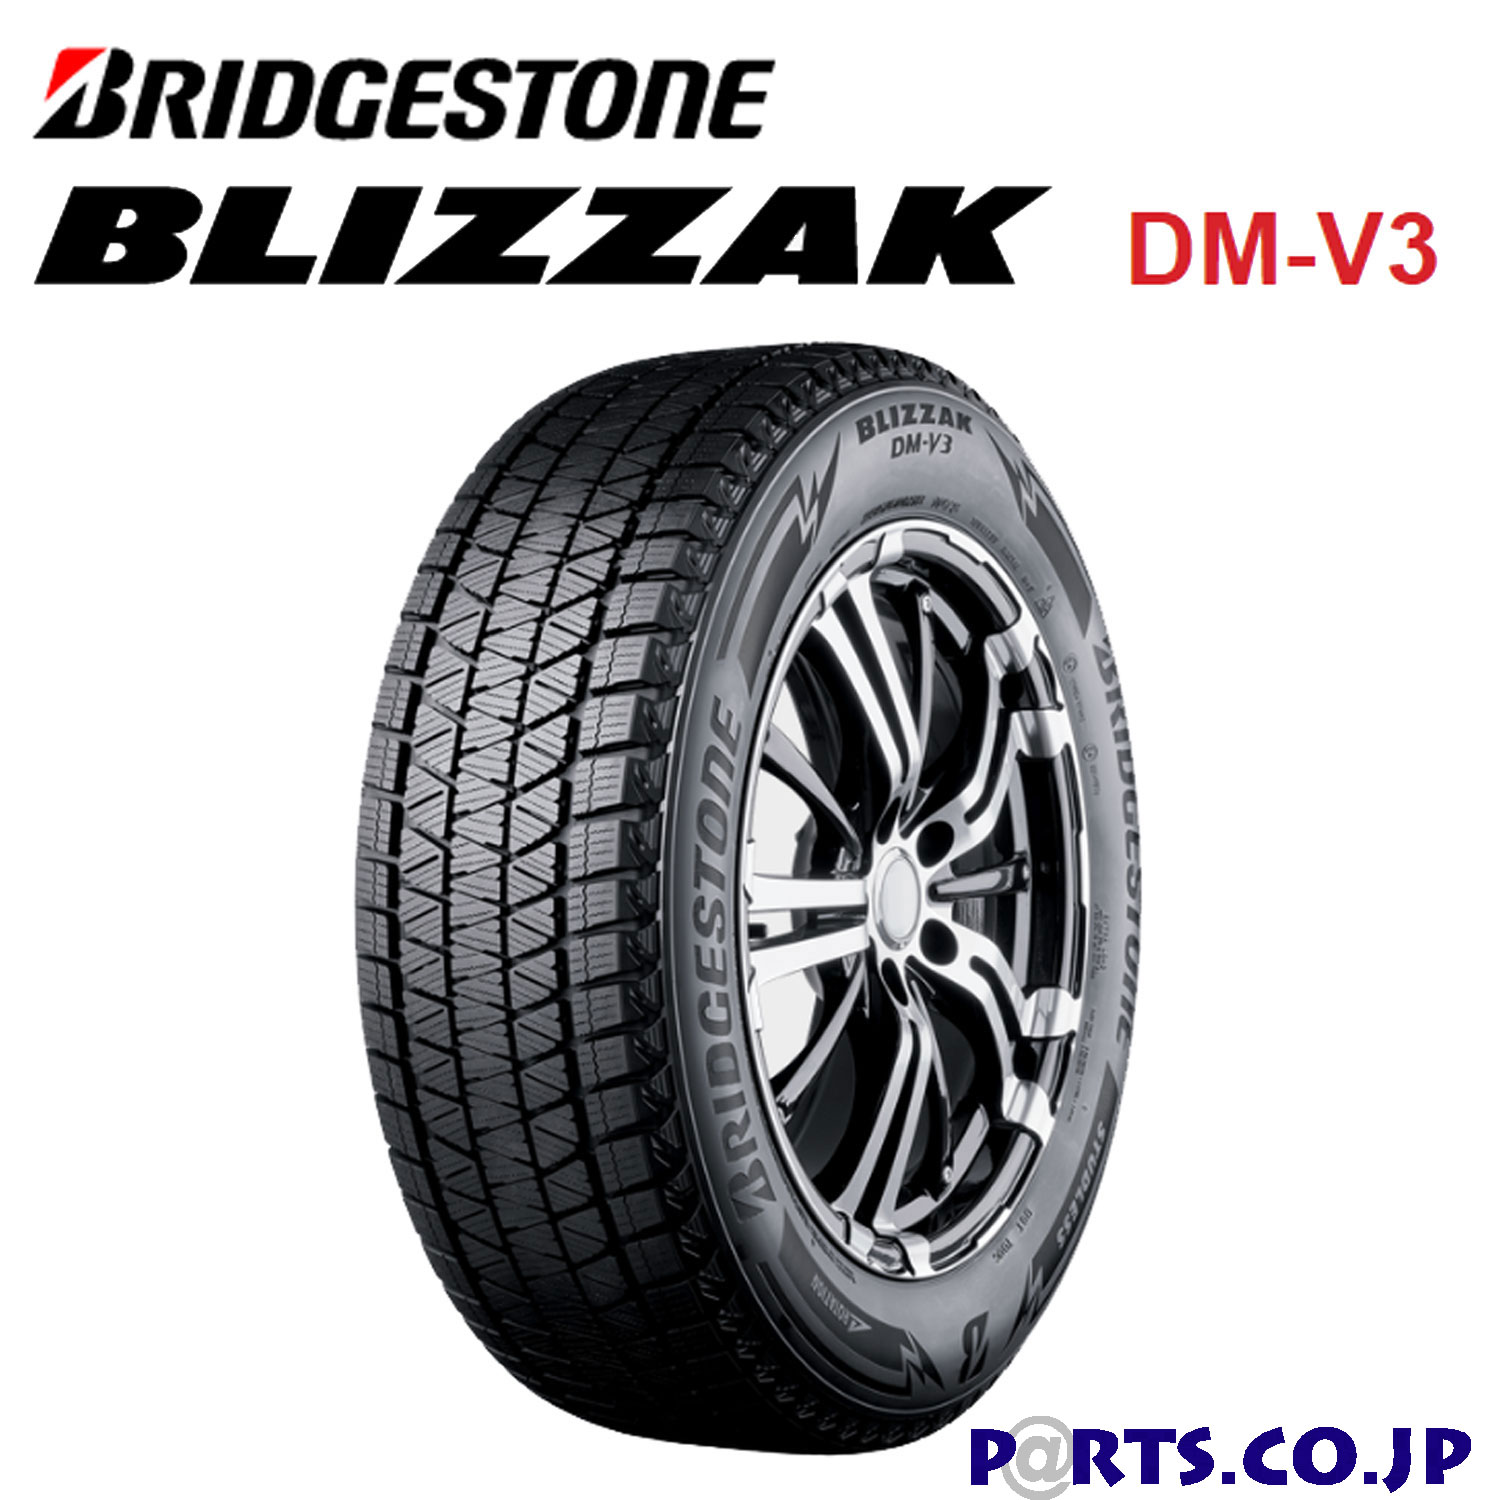 高級素材使用ブランド BRIDGESTONE BLIZZAK DM-V3 275 45R20 110T